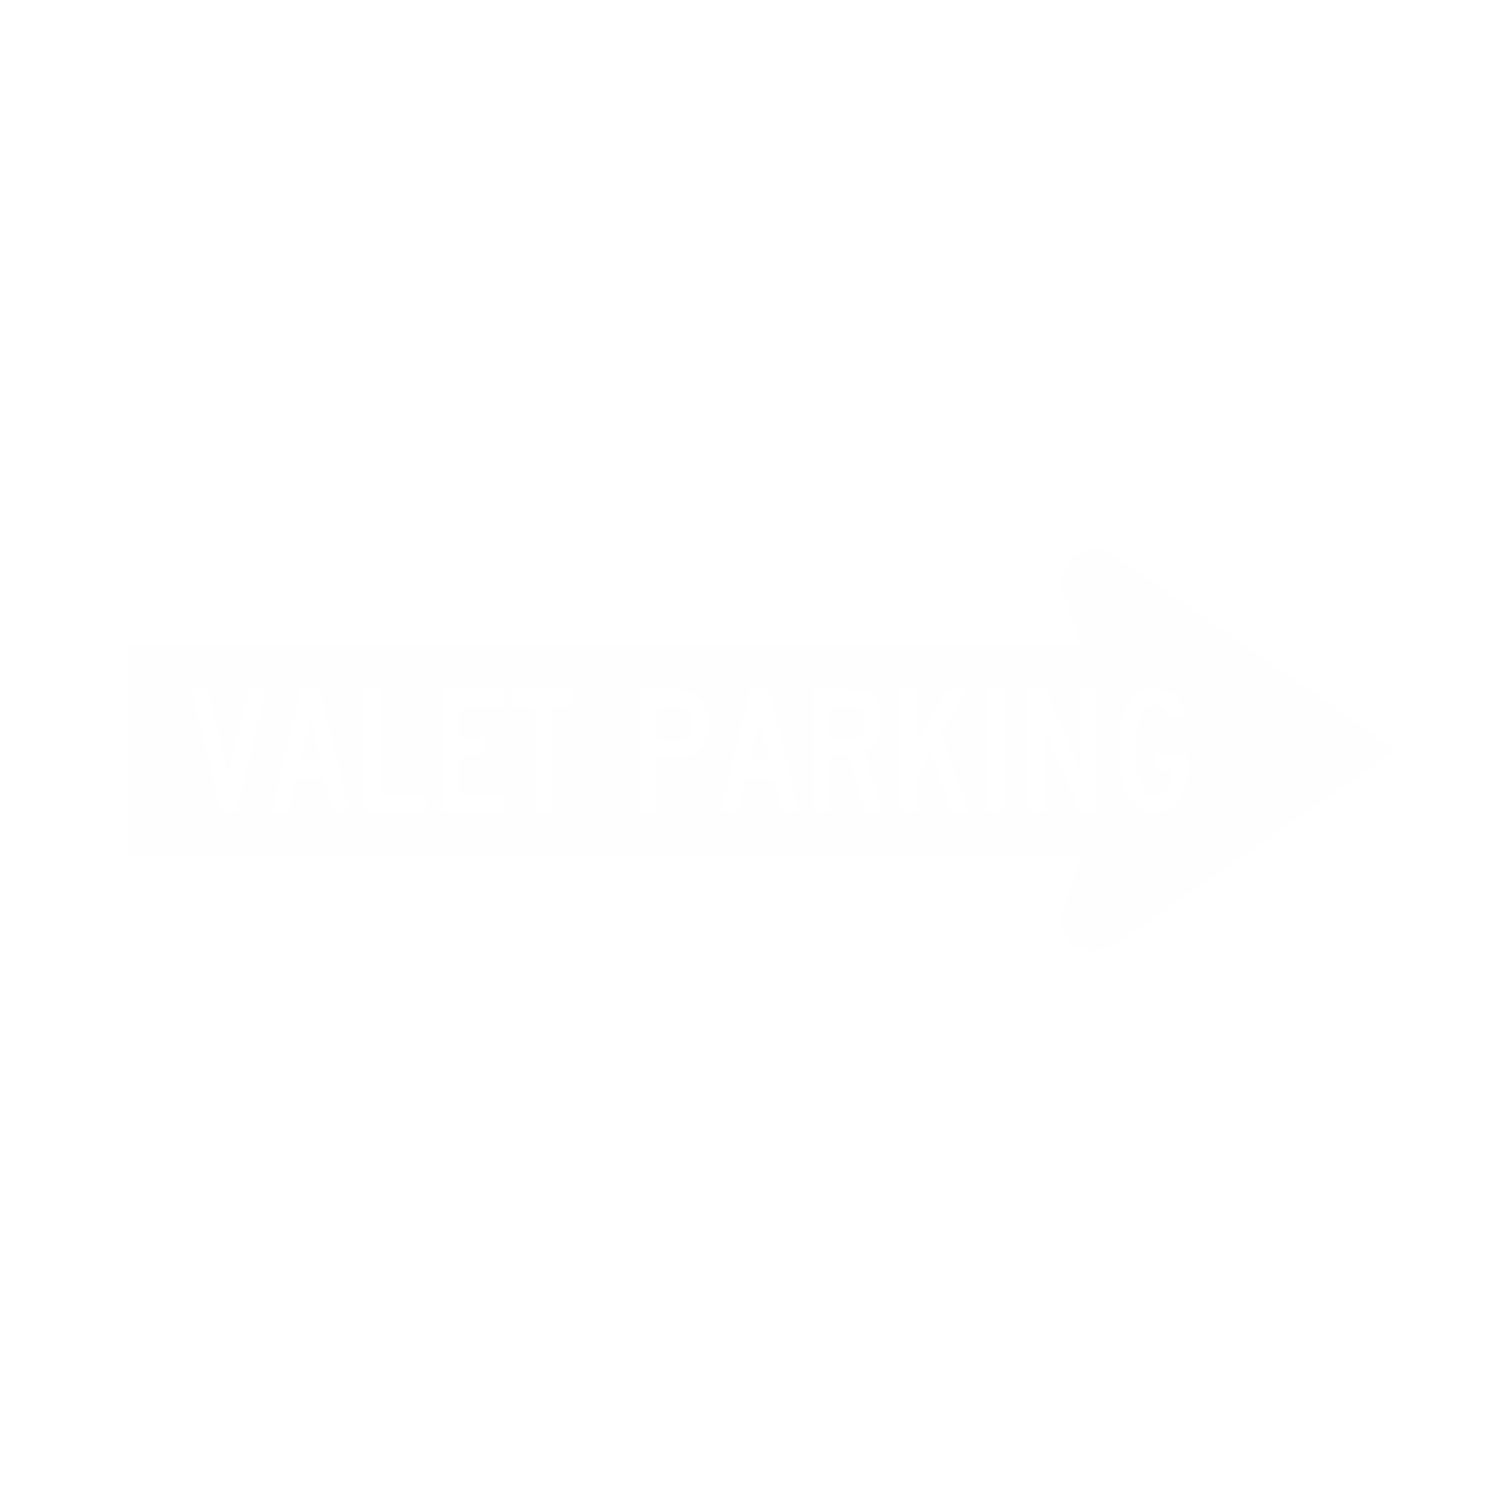 Valet Parking Directional Sign